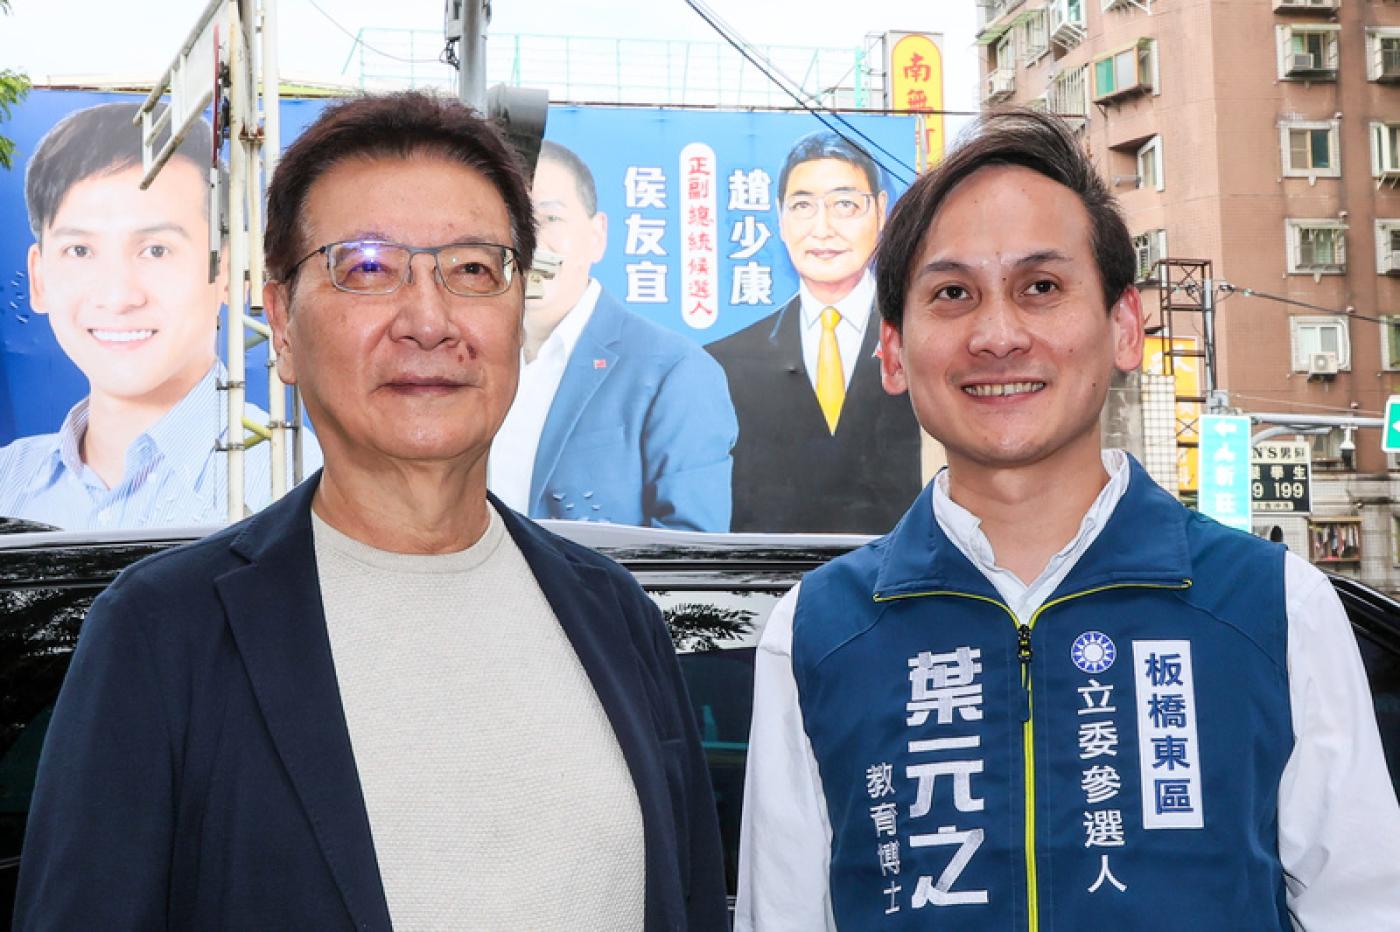 國民黨副總統參選人趙少康(左)今到立委參選人葉元之(右)找畫師手繪塗改的看板「驗收」。中央社